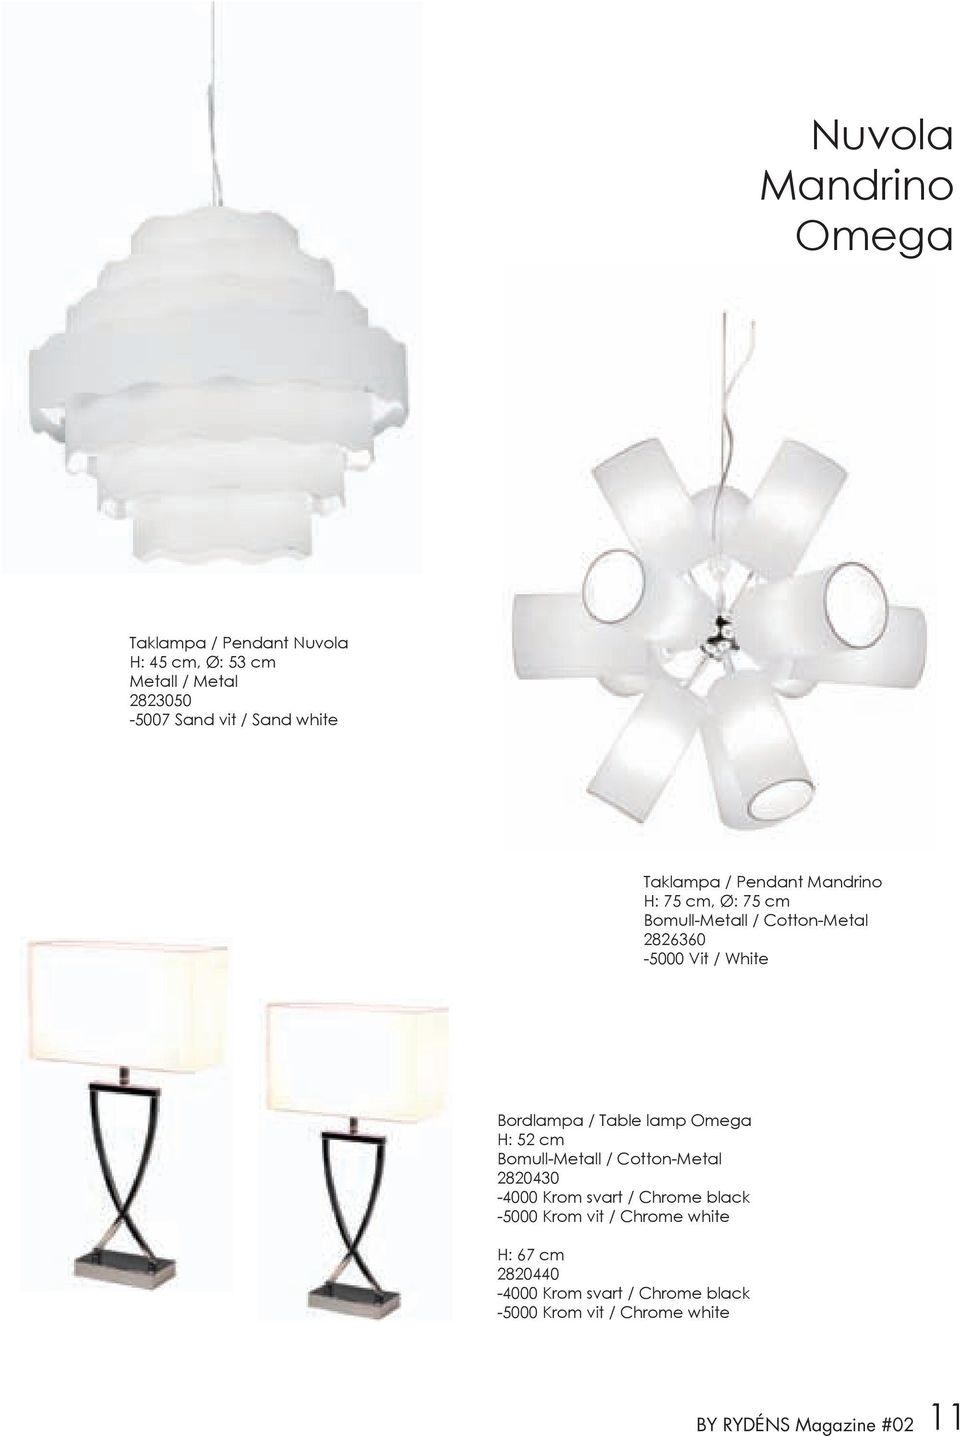 Bordlampa / Table lamp Omega H: 52 cm Bomull-Metall / Cotton-Metal 2820430-4000 Krom svart / Chrome black -5000